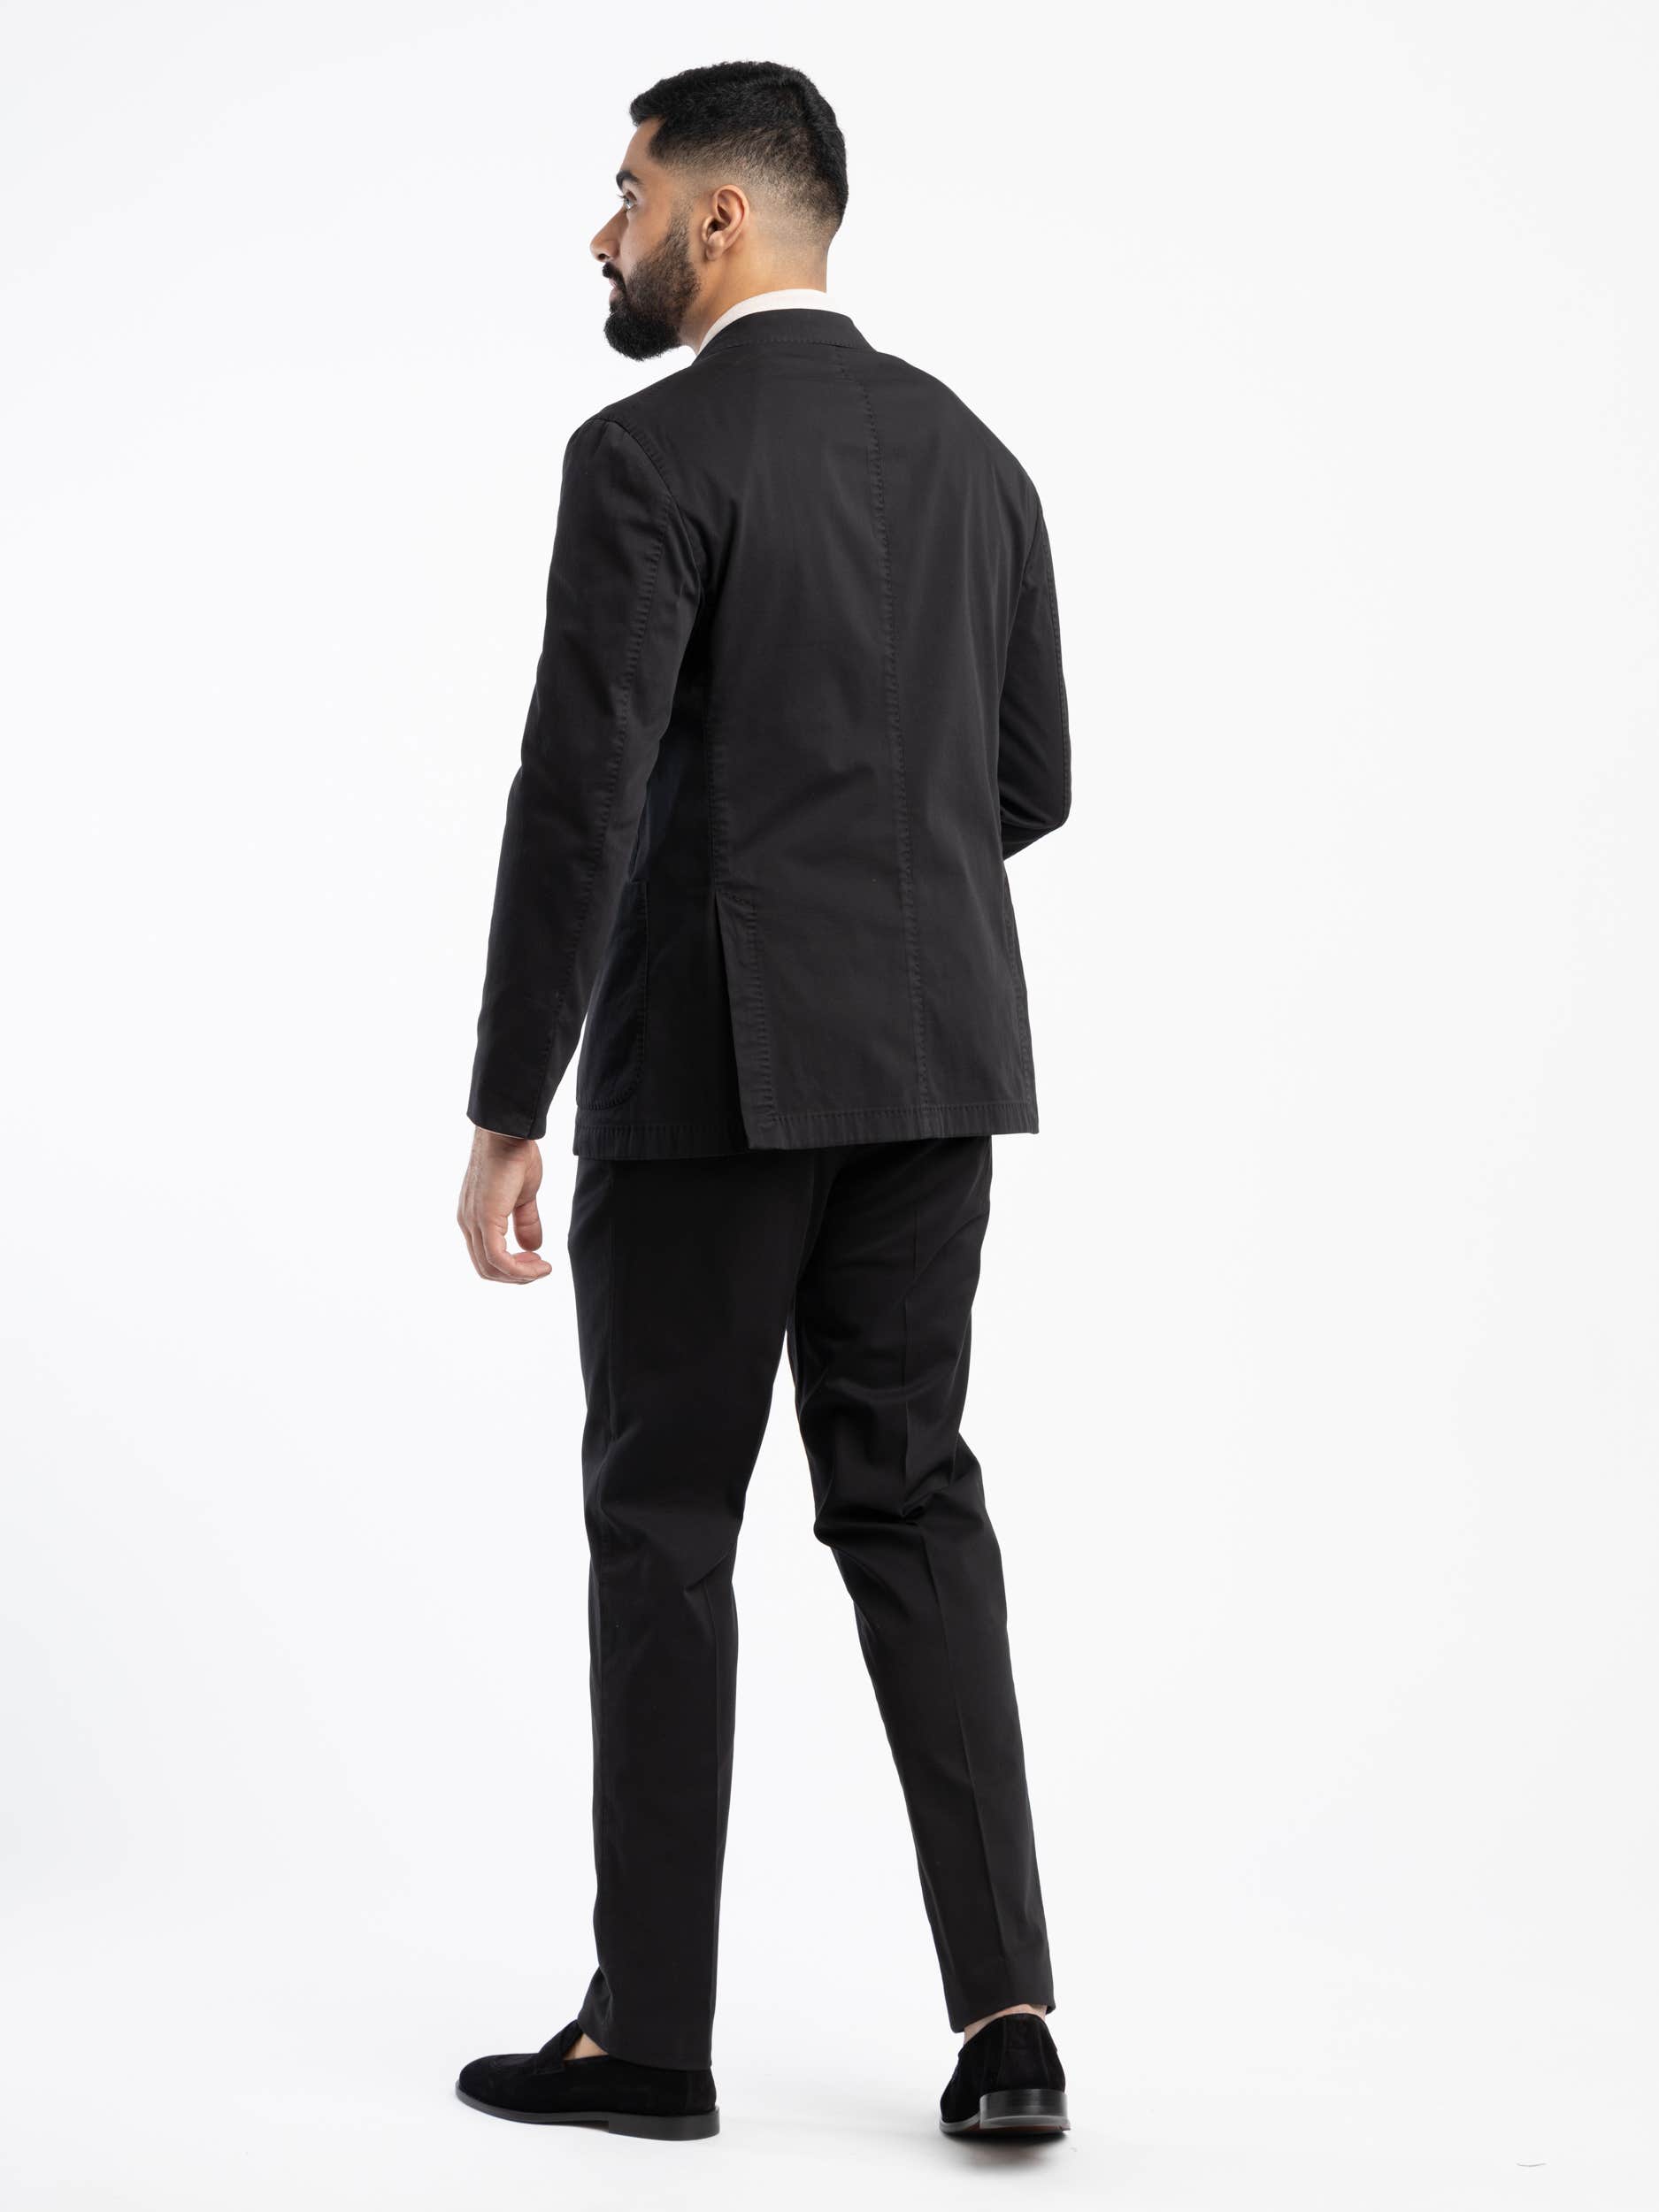 Black Cotton K-Suit